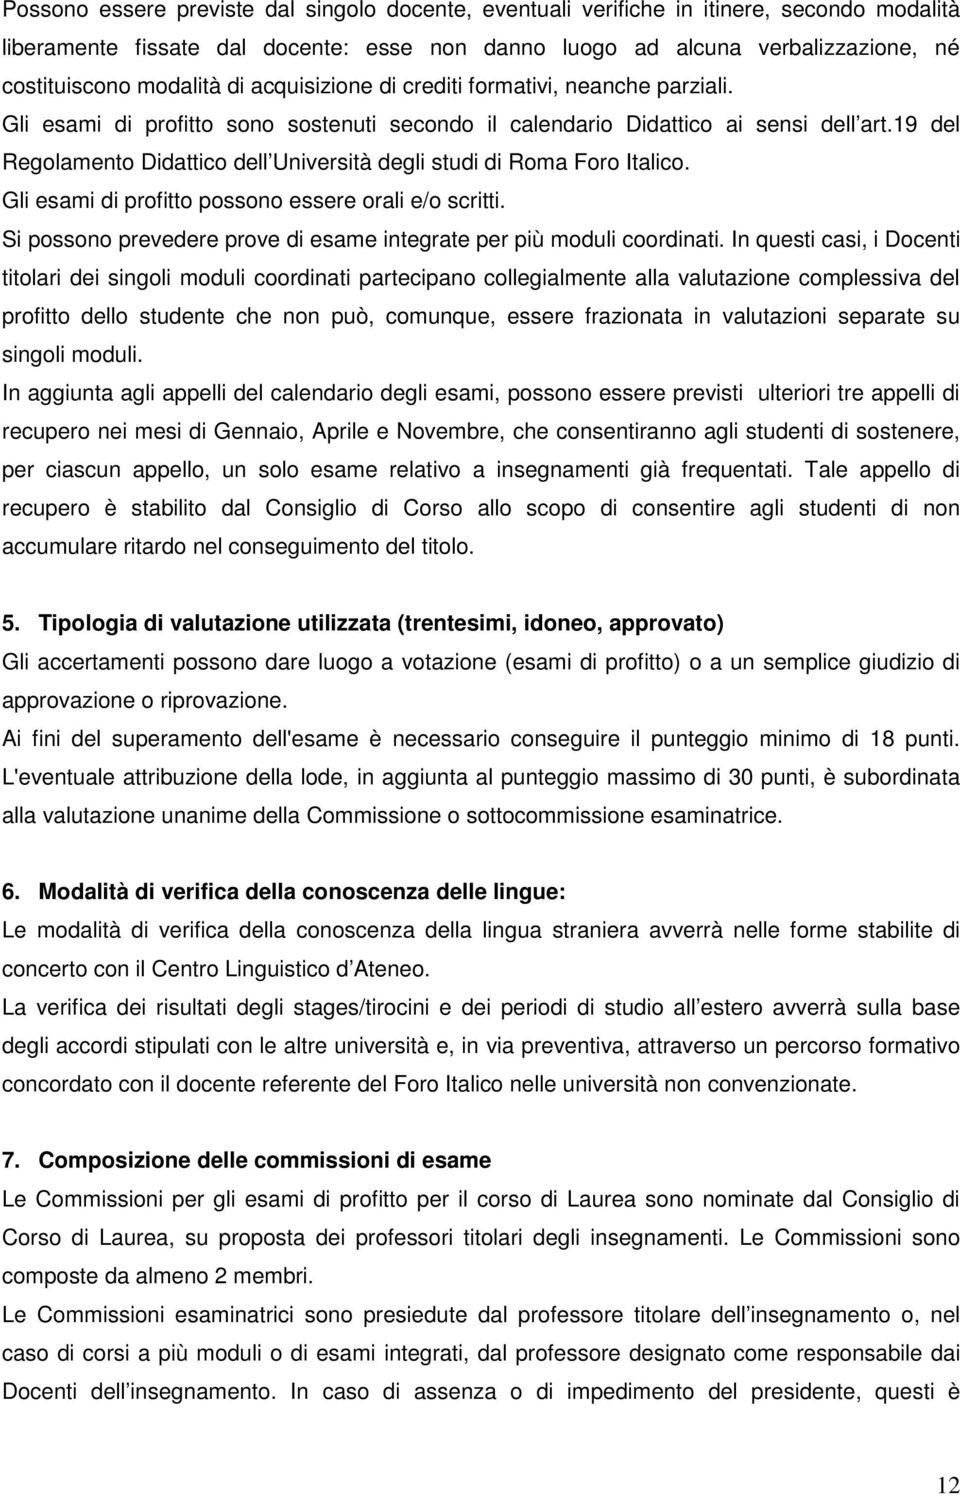 19 del Regolamento Didattico dell Università degli studi di Roma Foro Italico. Gli esami di profitto possono essere orali e/o scritti.